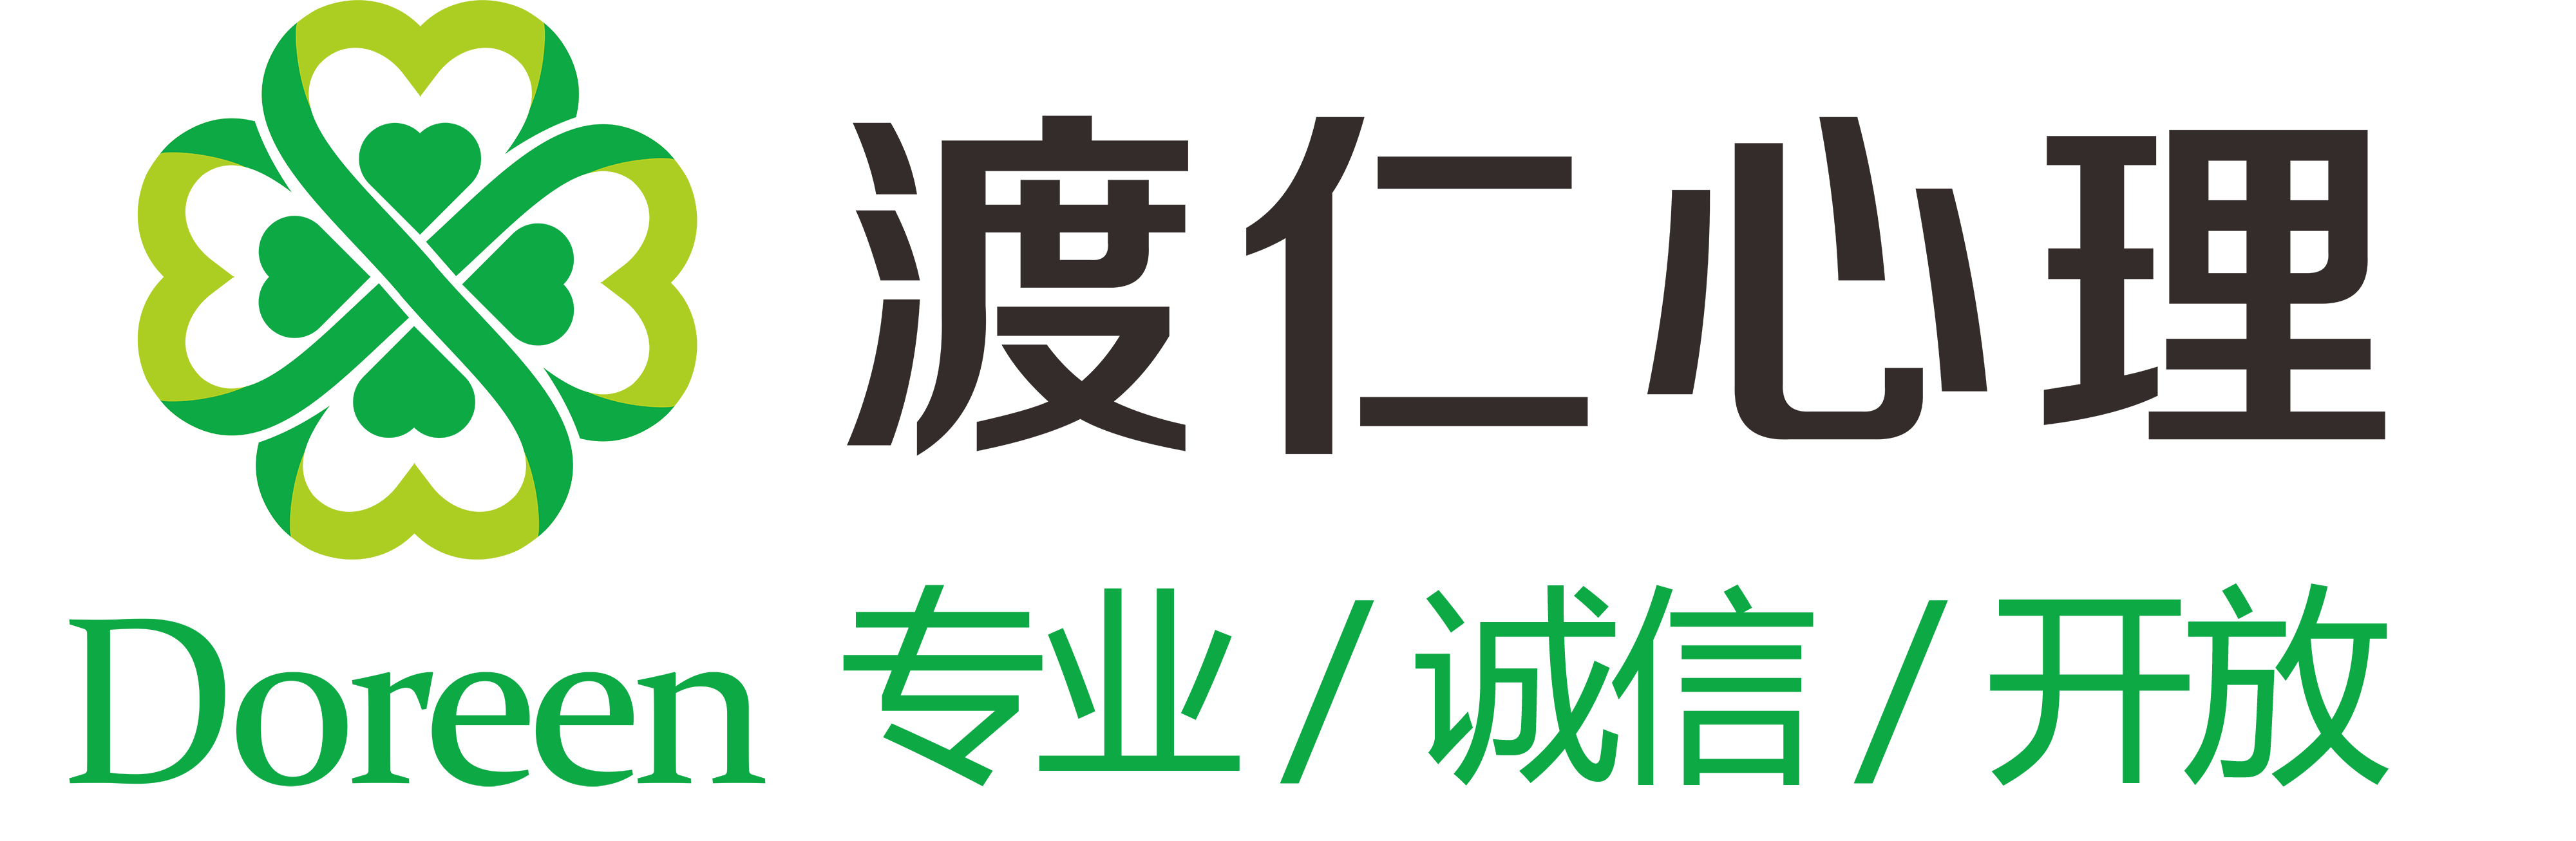 网站首页logo